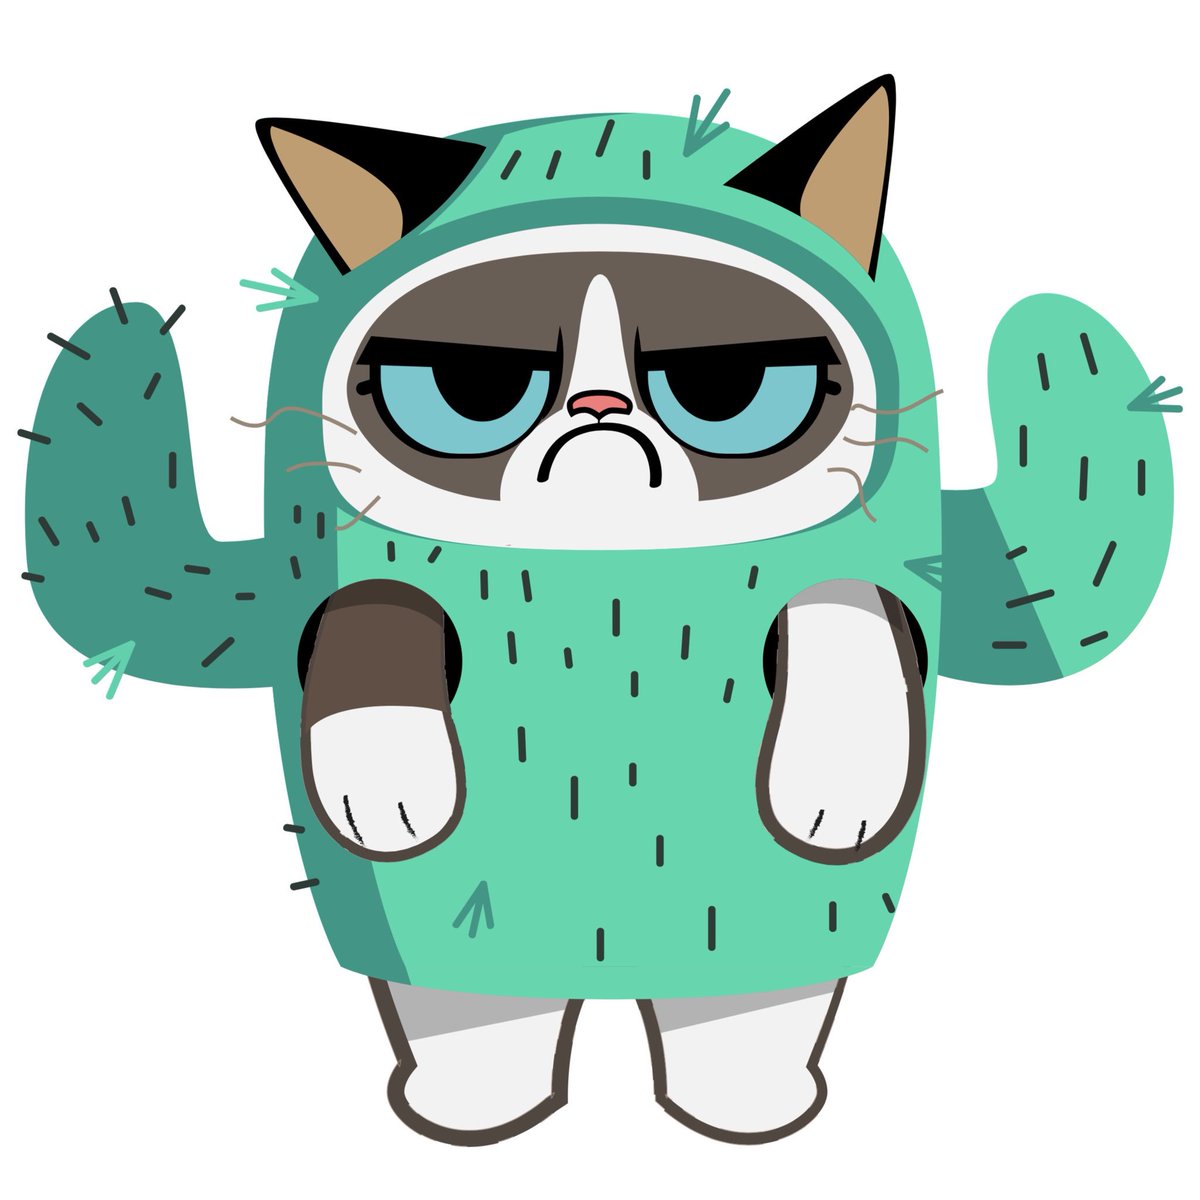 Grumpy Cat (@RealGrumpyCat) on Twitter photo 2018-02-03 22:57:30